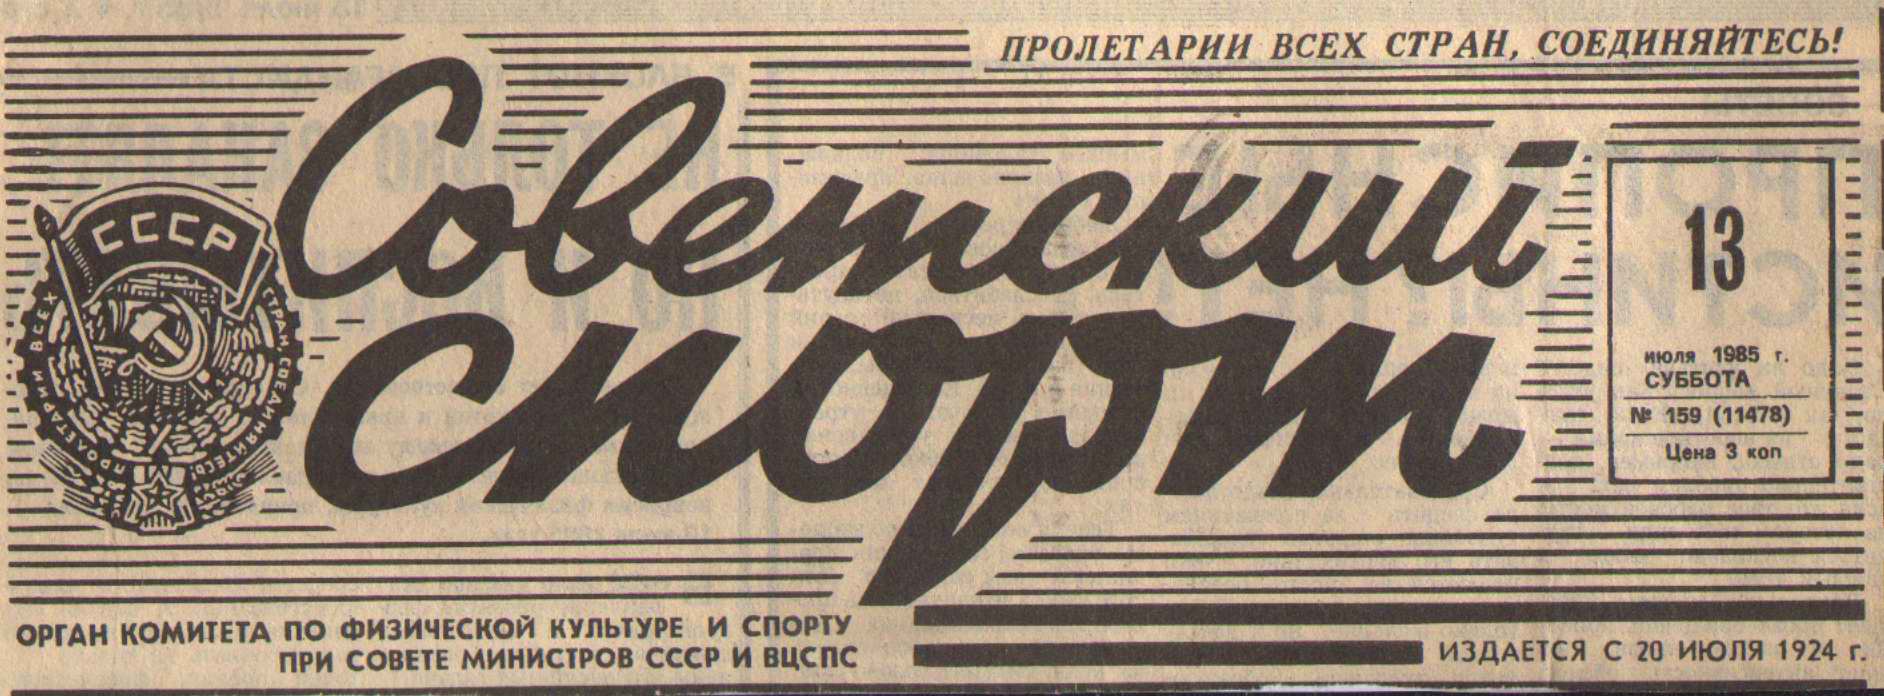 Старые газеты Советский спорт